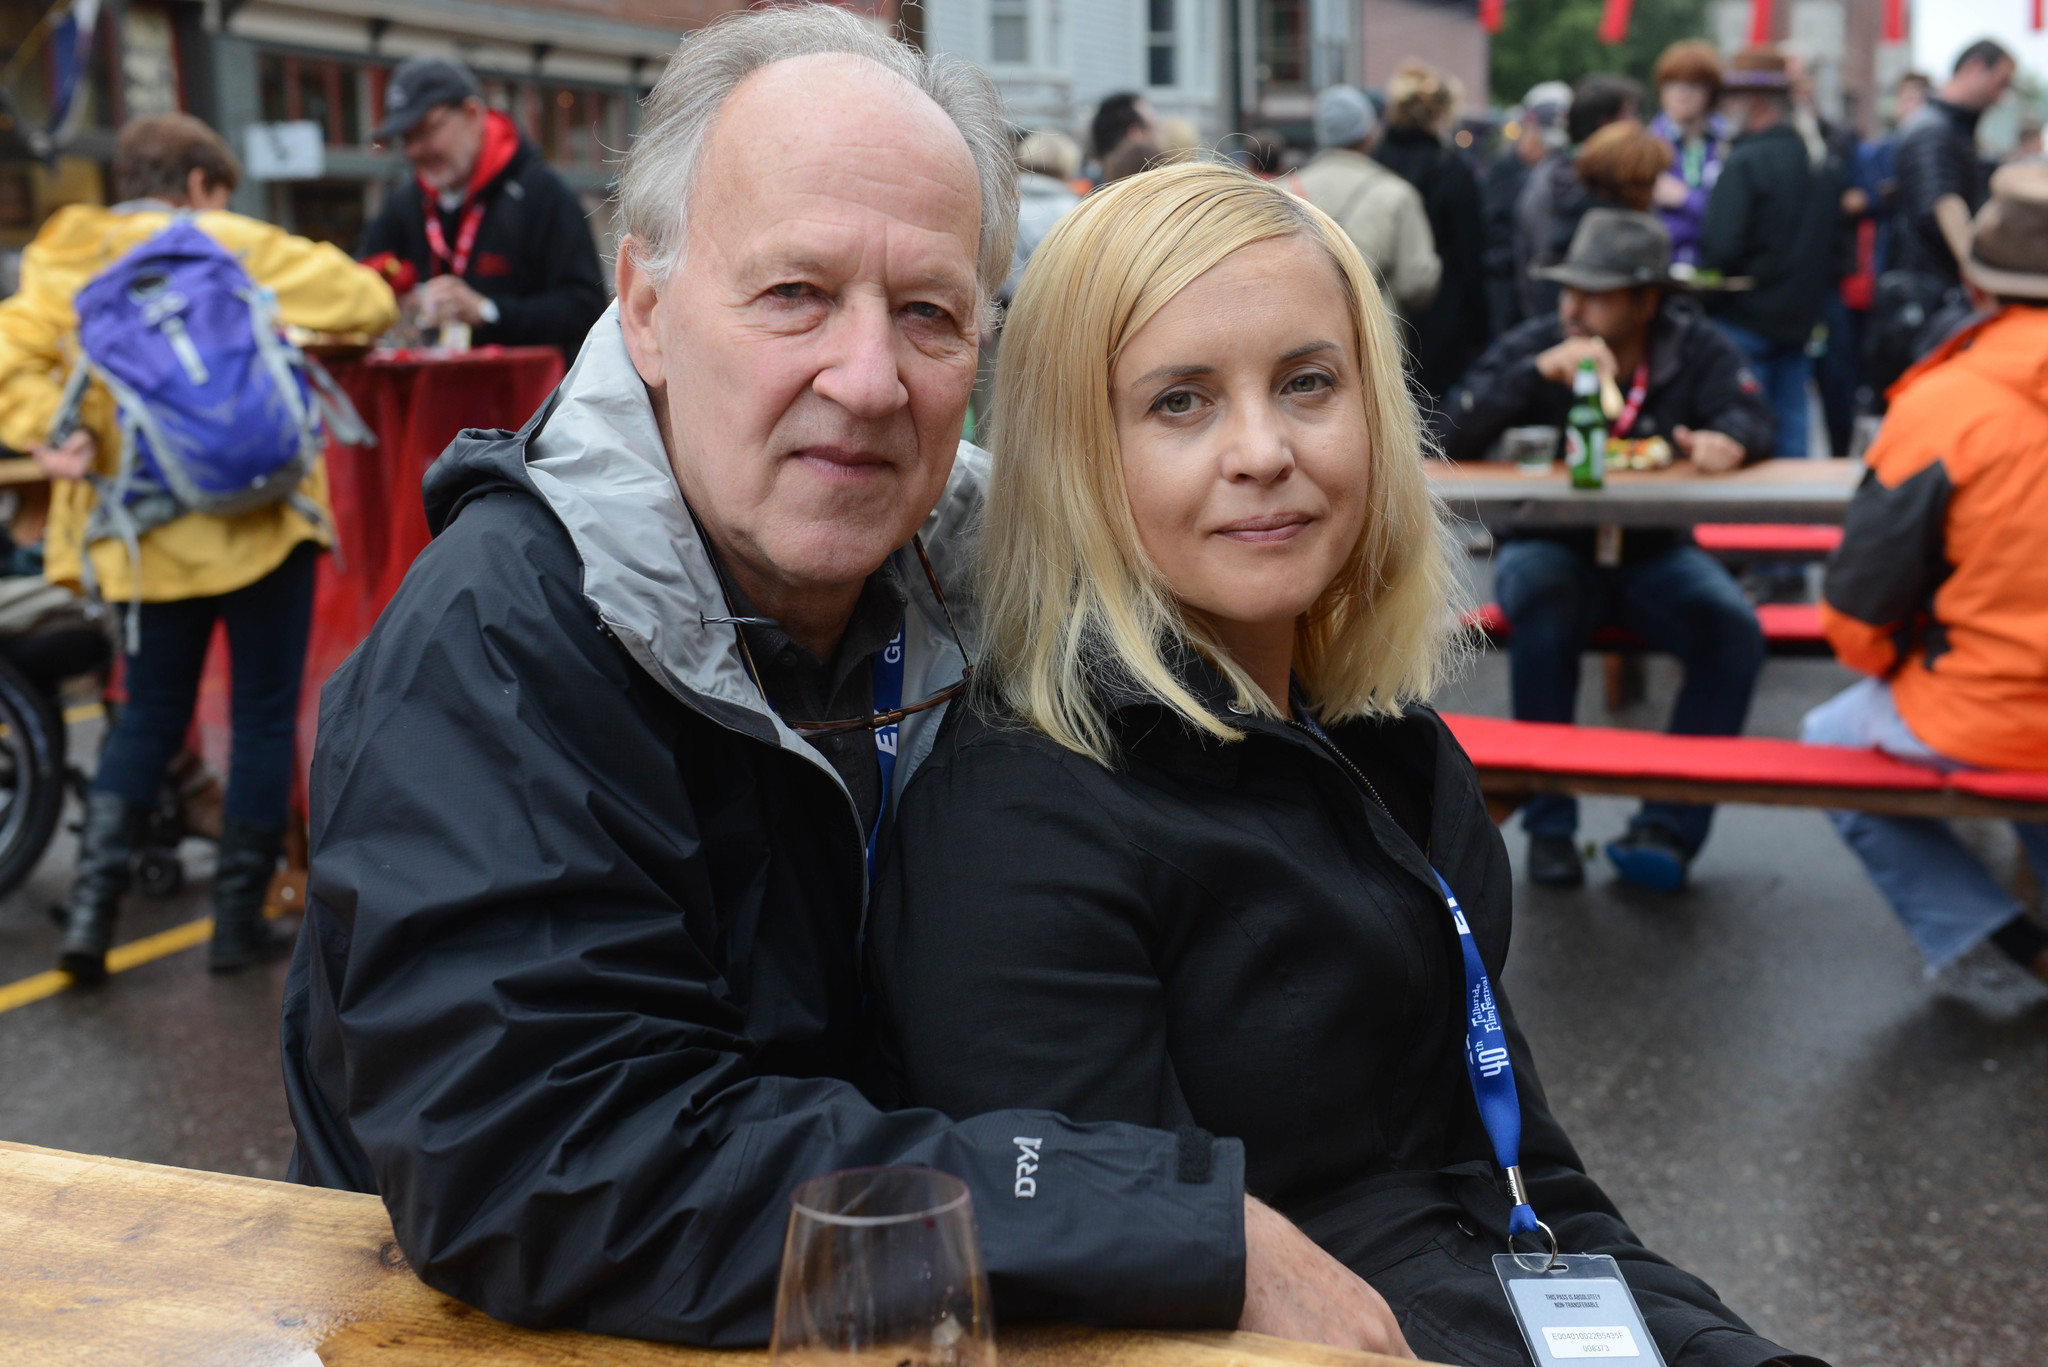 Werner Herzog and Lena Herzog